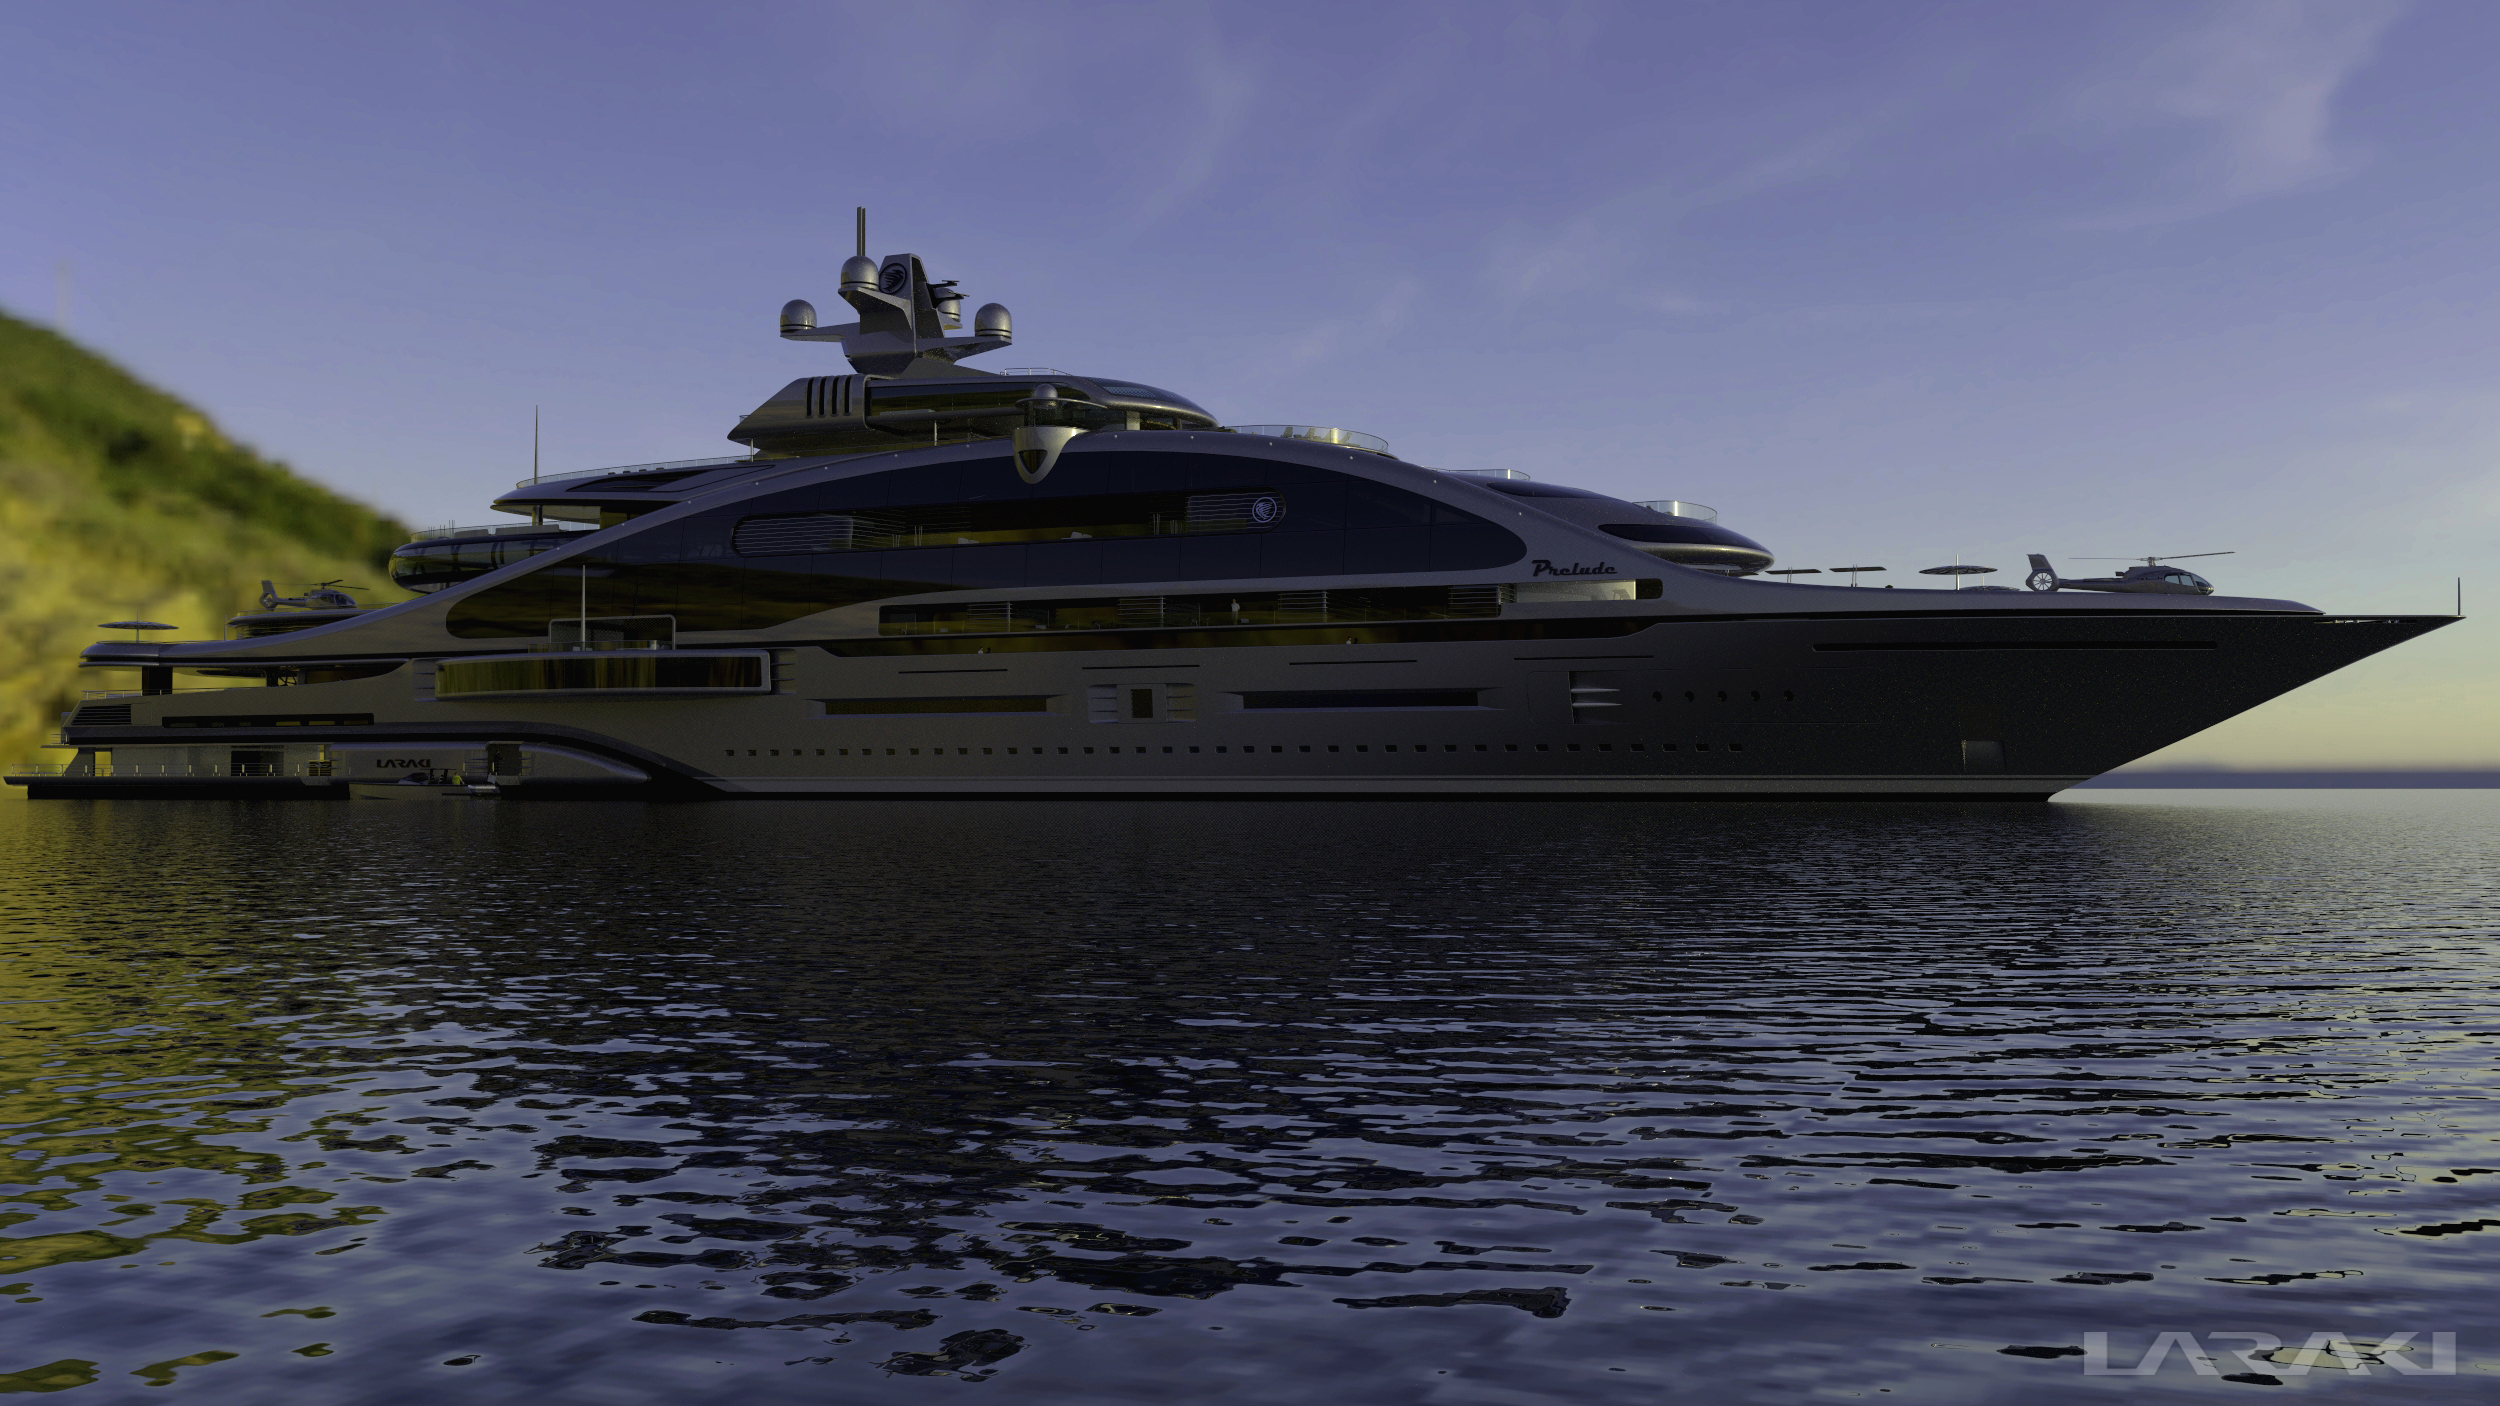 163m megayacht Prelude by Laraki Yacht Design